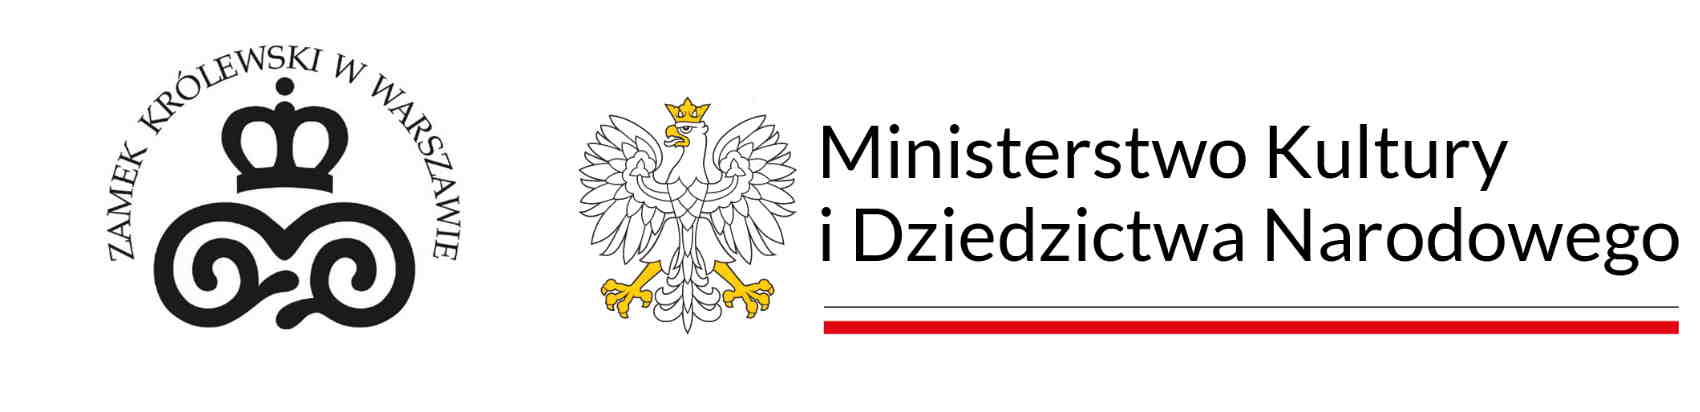 Logotypy Zamku Królewskiego w Warszawie i Ministerstwa Kultury i Dziedzictwa Narodowego